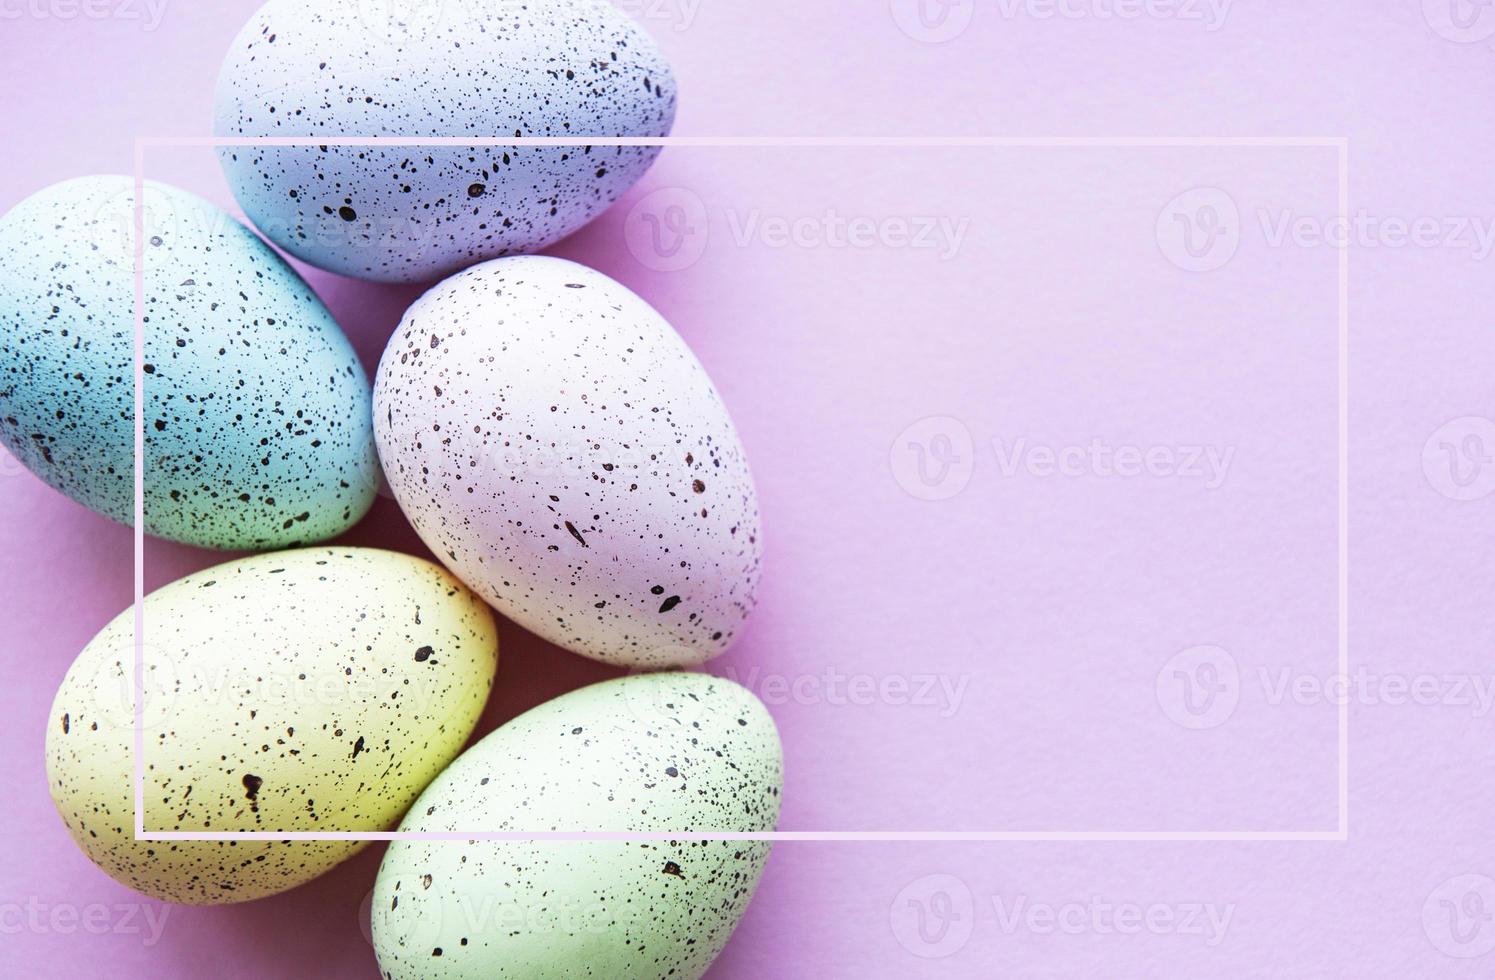 ovos de páscoa coloridos foto